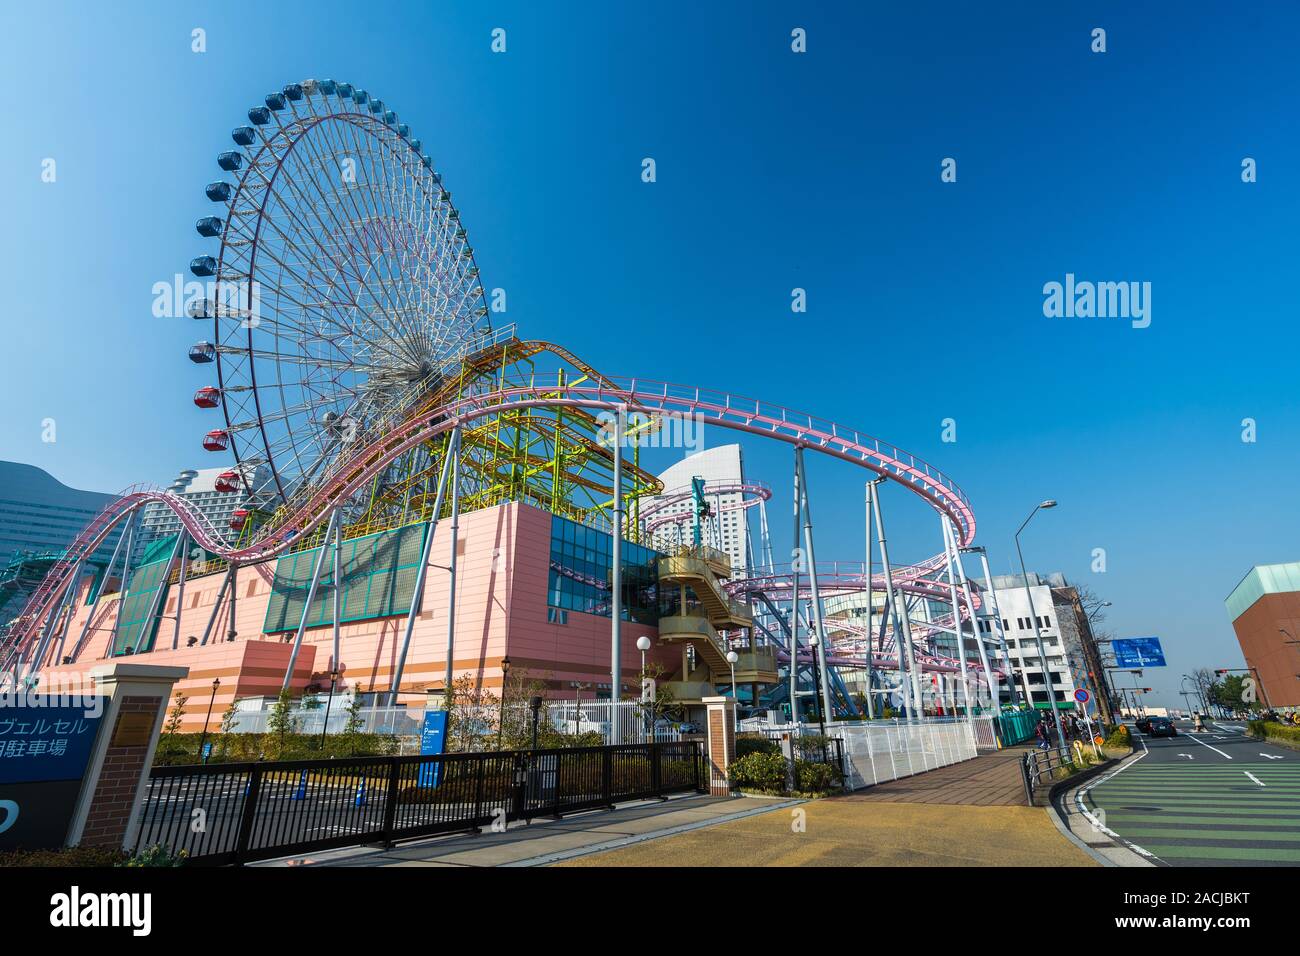 YOKOHAMA, JAPAN - March 26, 2019: Giant ferris wheel Cosmo Clock 21 ain Yokohama Minatomirai, Japan Stock Photo